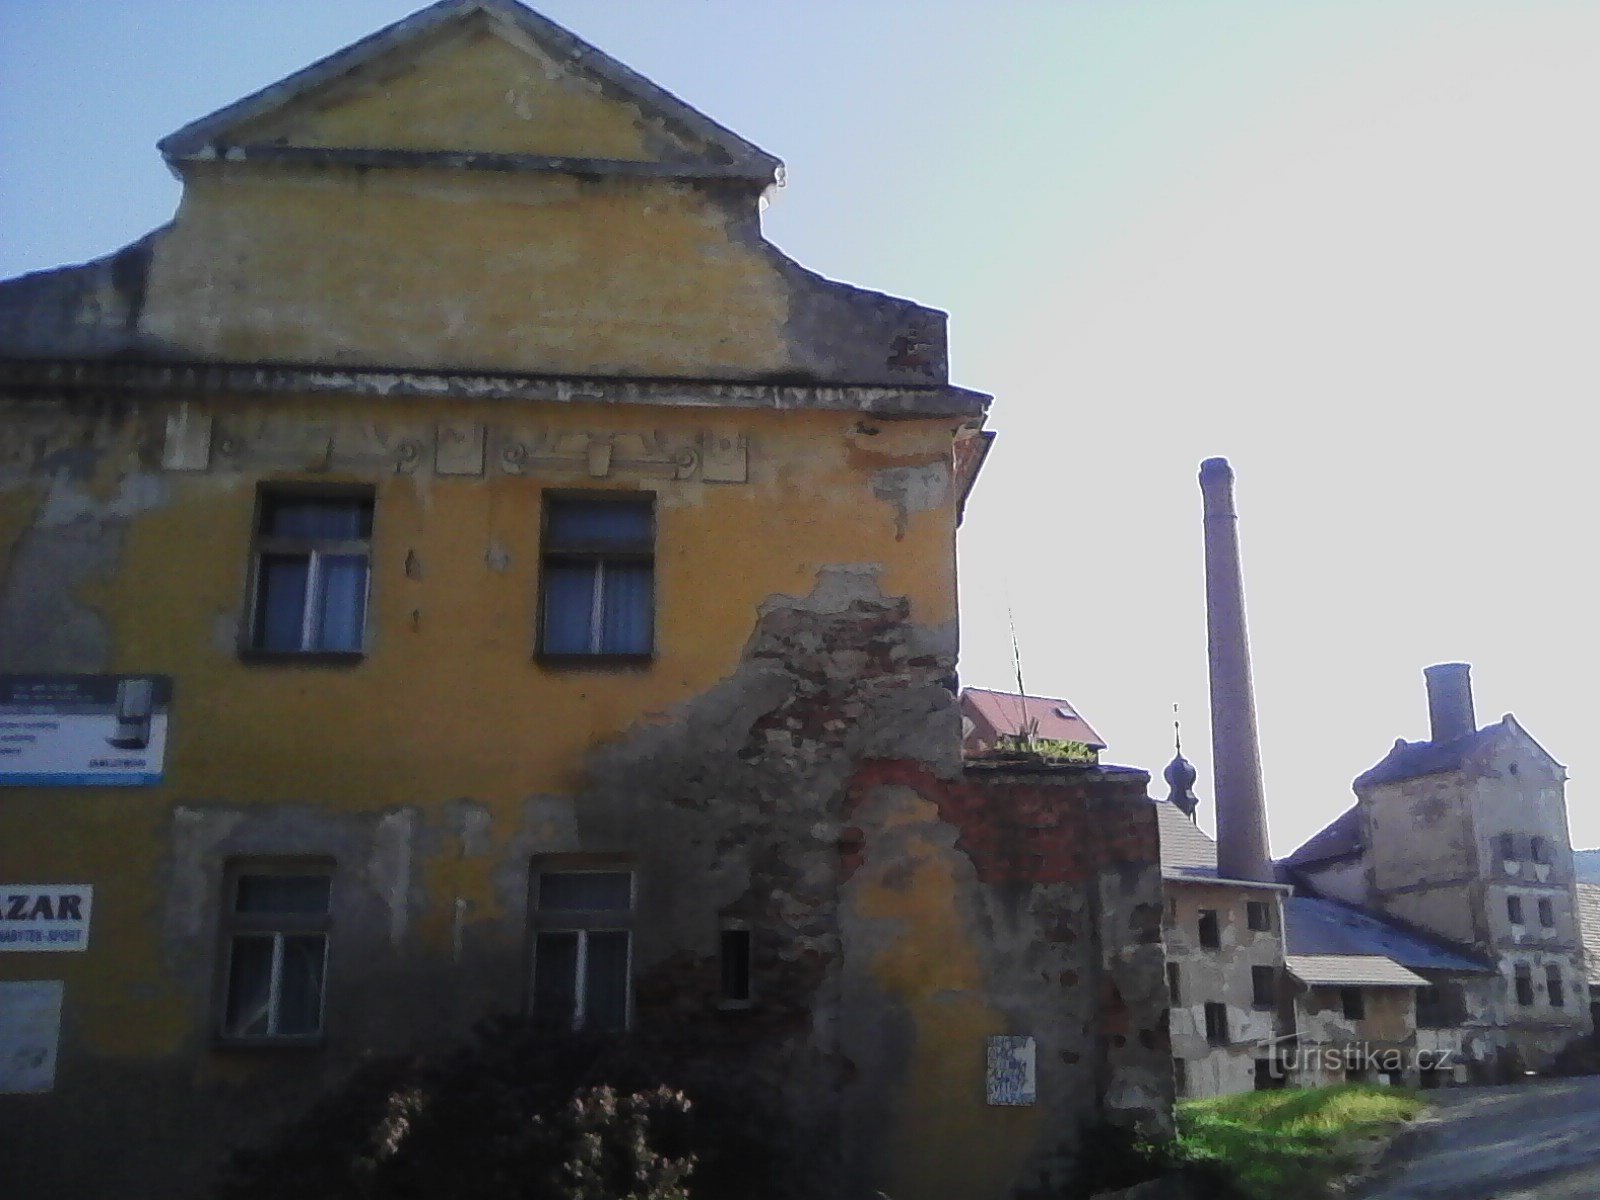 2. El antiguo castillo de Votice. Una fortaleza del siglo XV, mencionada por primera vez en 15. El castillo permanece